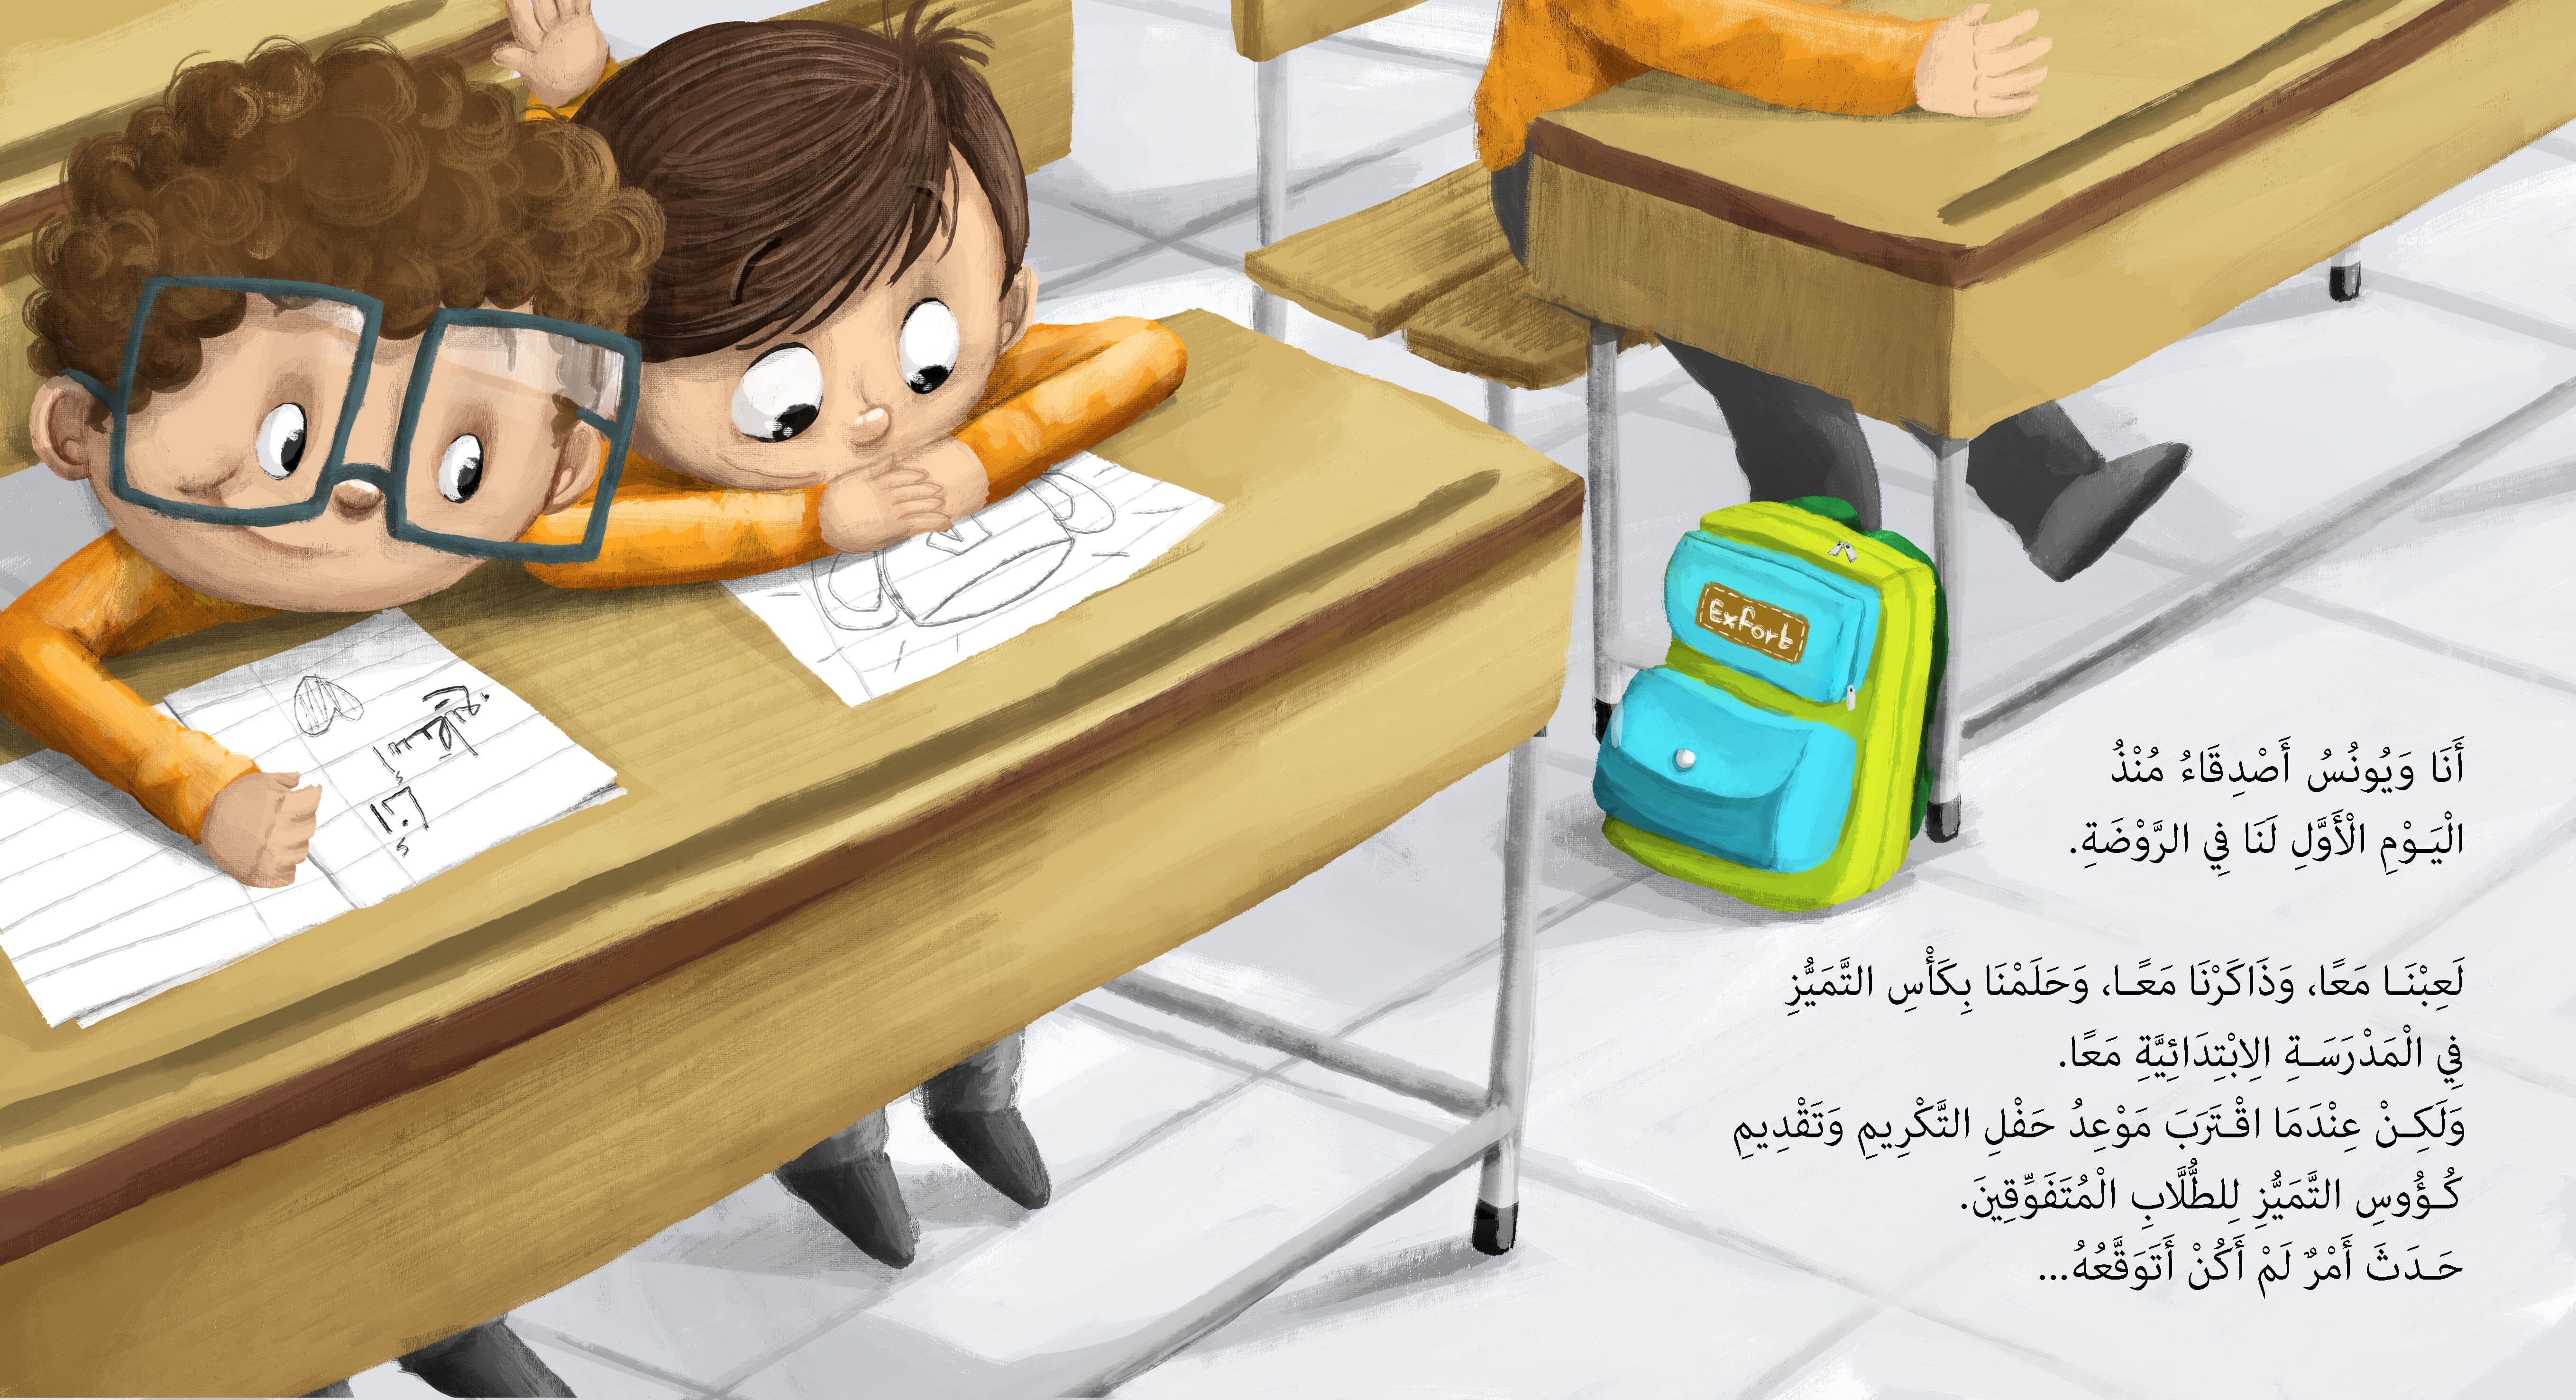 مجموعة قلب سليم كتب أطفال باسنت إبراهيم 